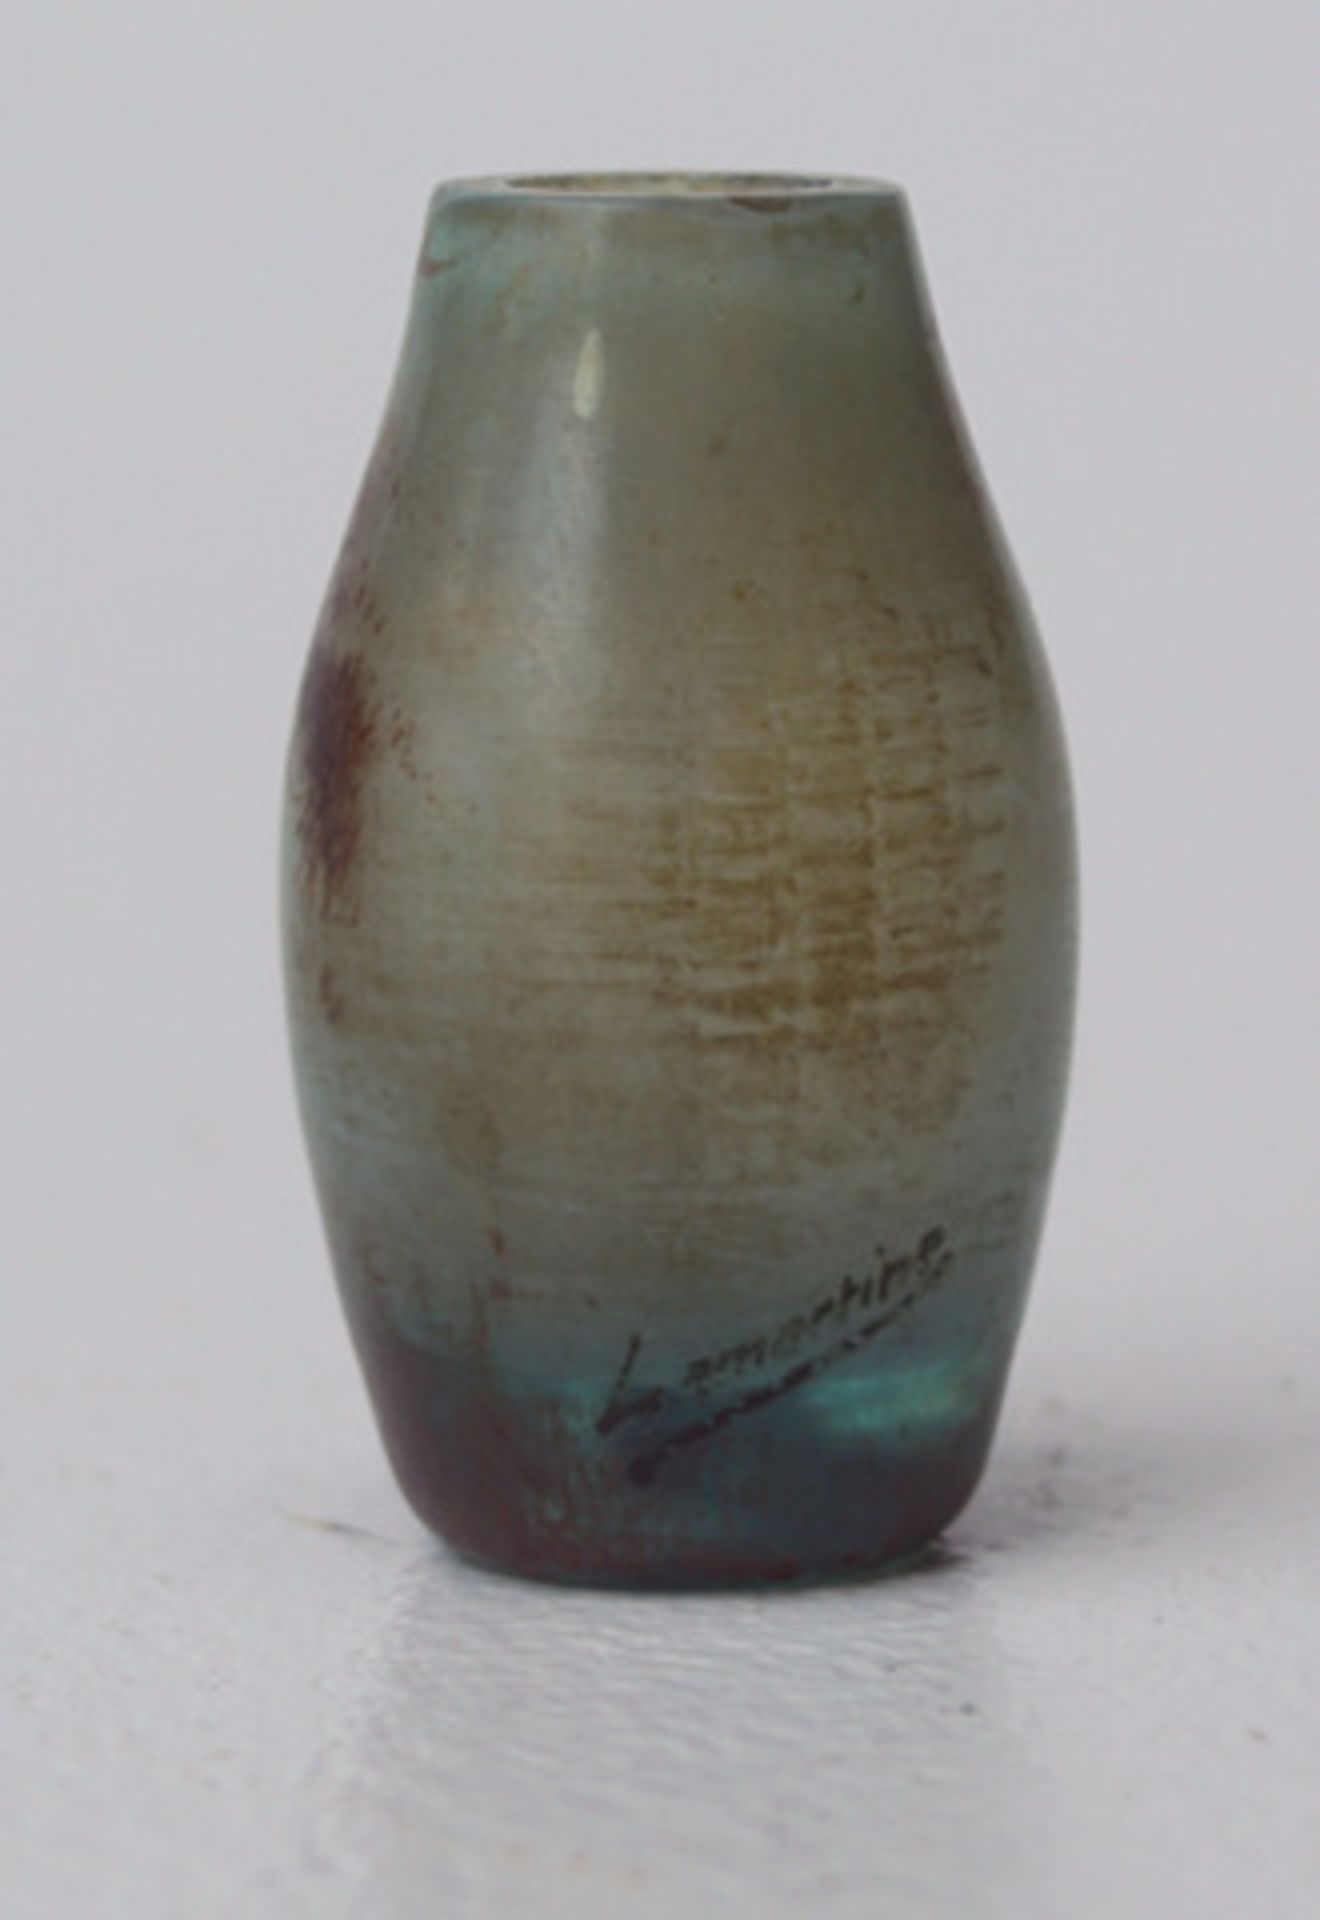 Miniaturvase Lamartine Winterl. Bäume Ovoide Vase leicht grünliche Glasmasse vor grauem Überfang, - Image 3 of 3